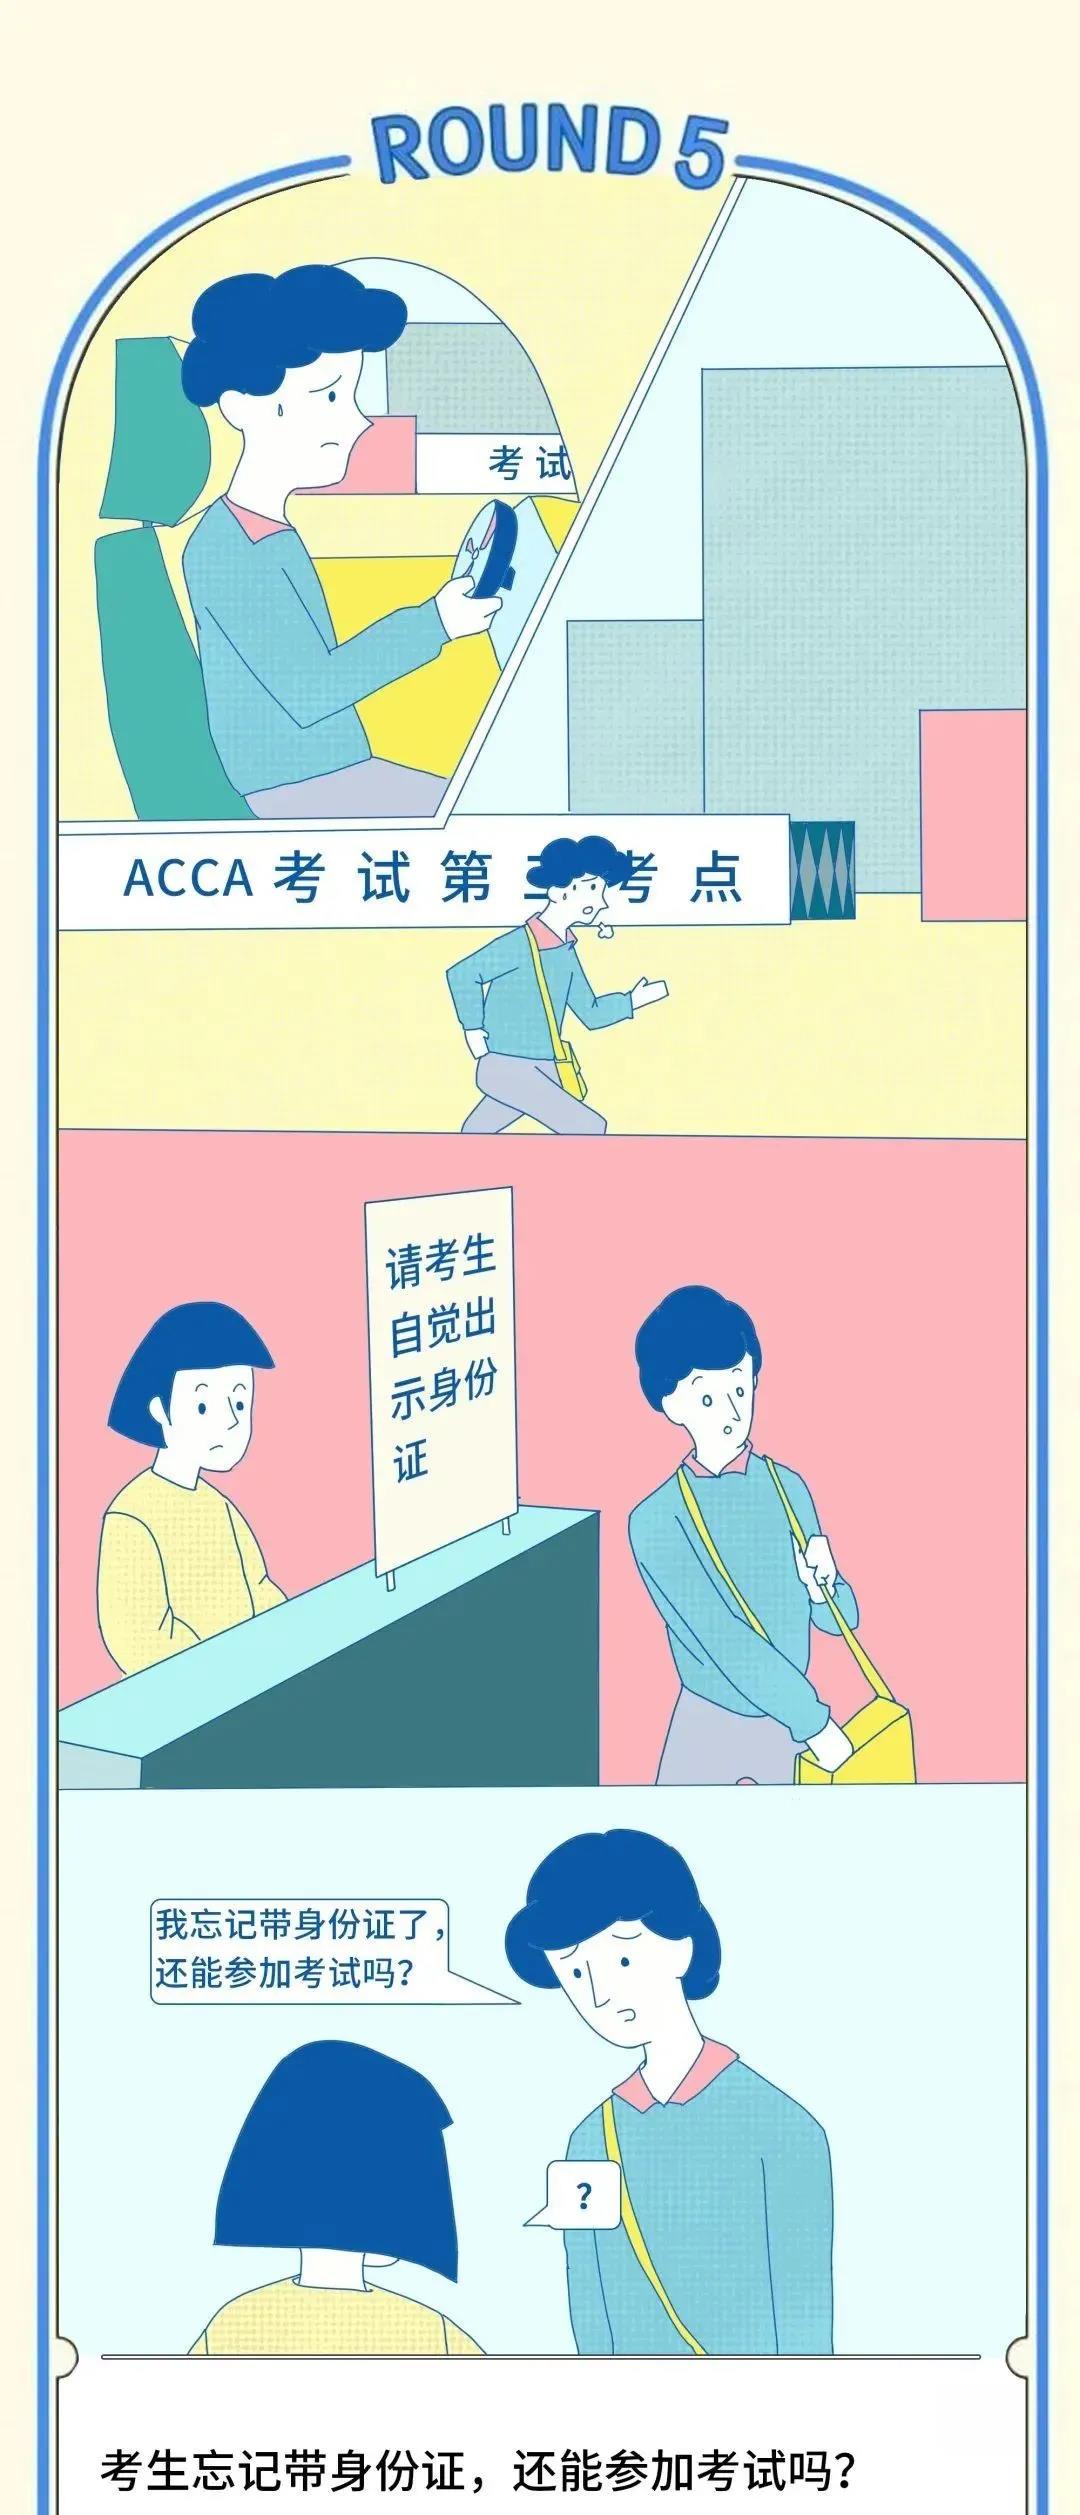 成为ACCA学员后 这些ACCA考试规则你都知道吗？